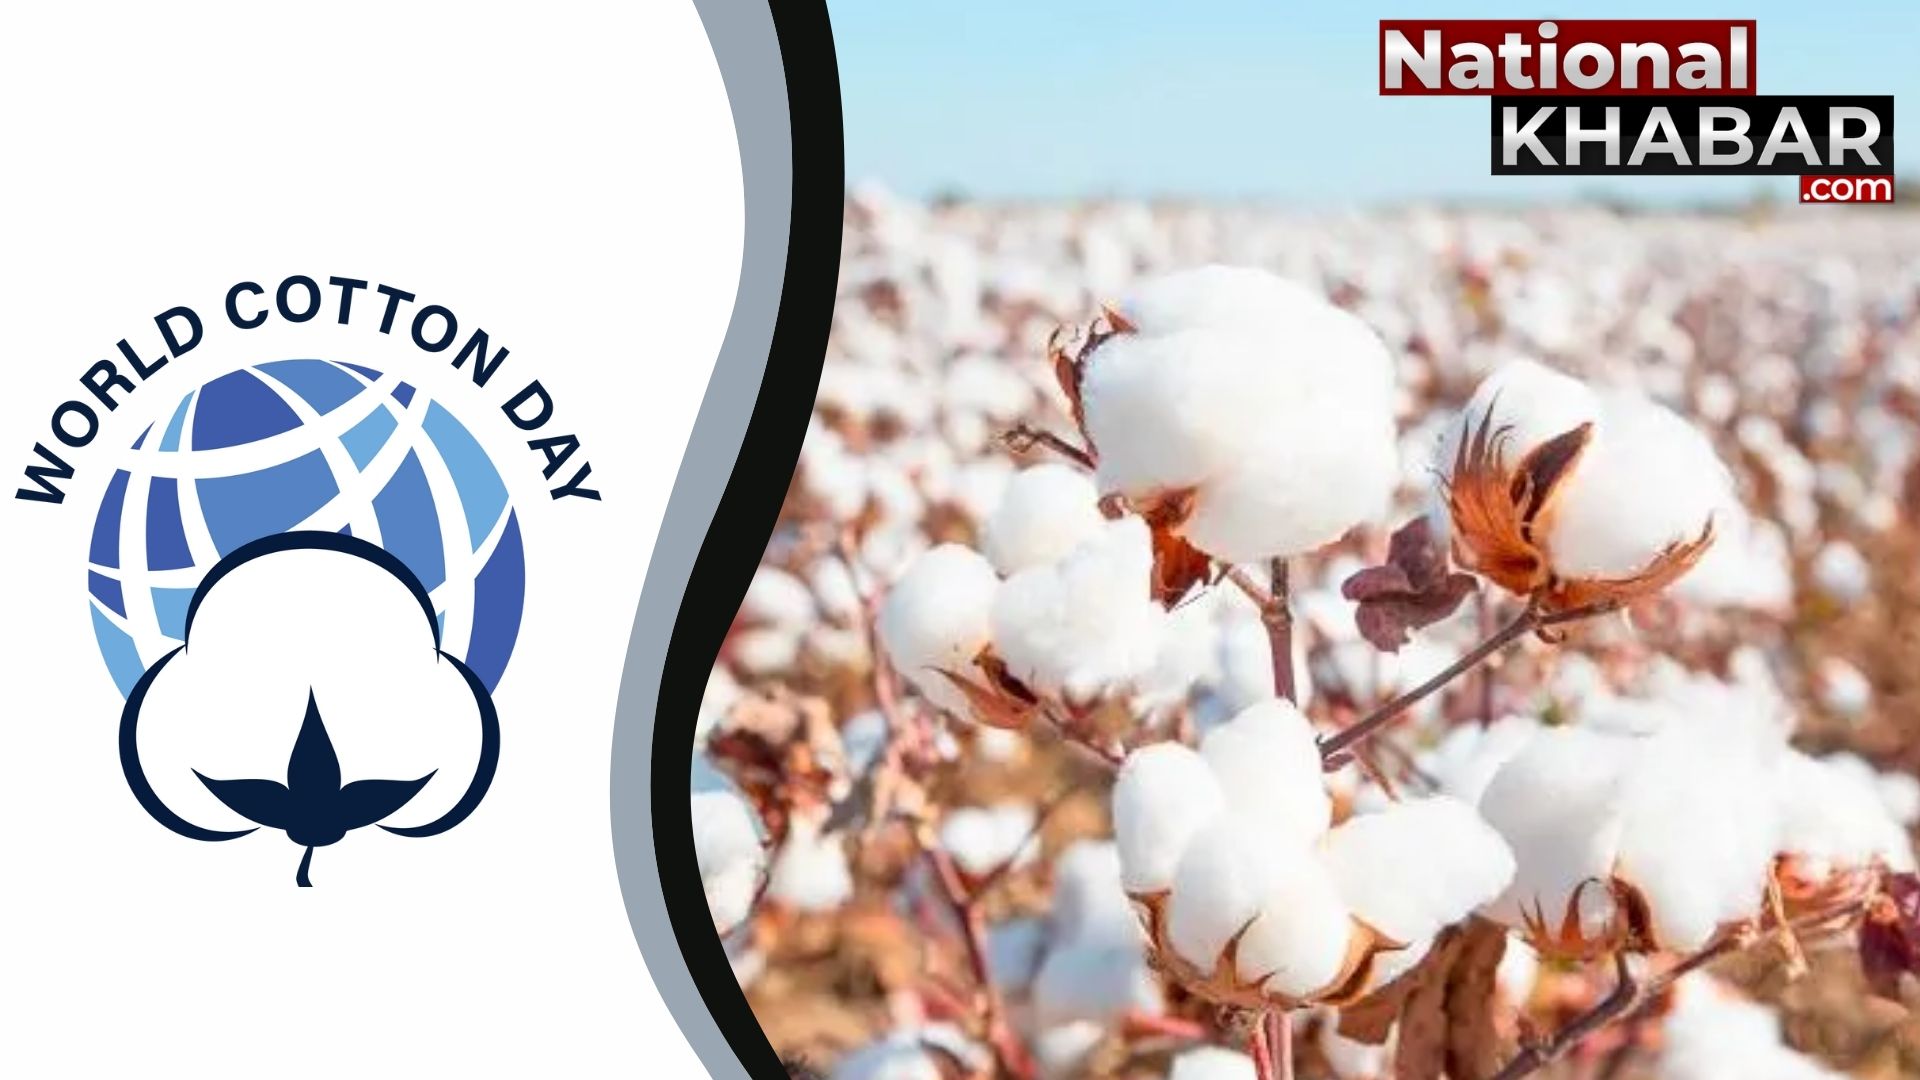 7 अक्टूब यानि World Cotton Day,  जानिए क्यों मनाया जाता है विश्व कपास दिवस